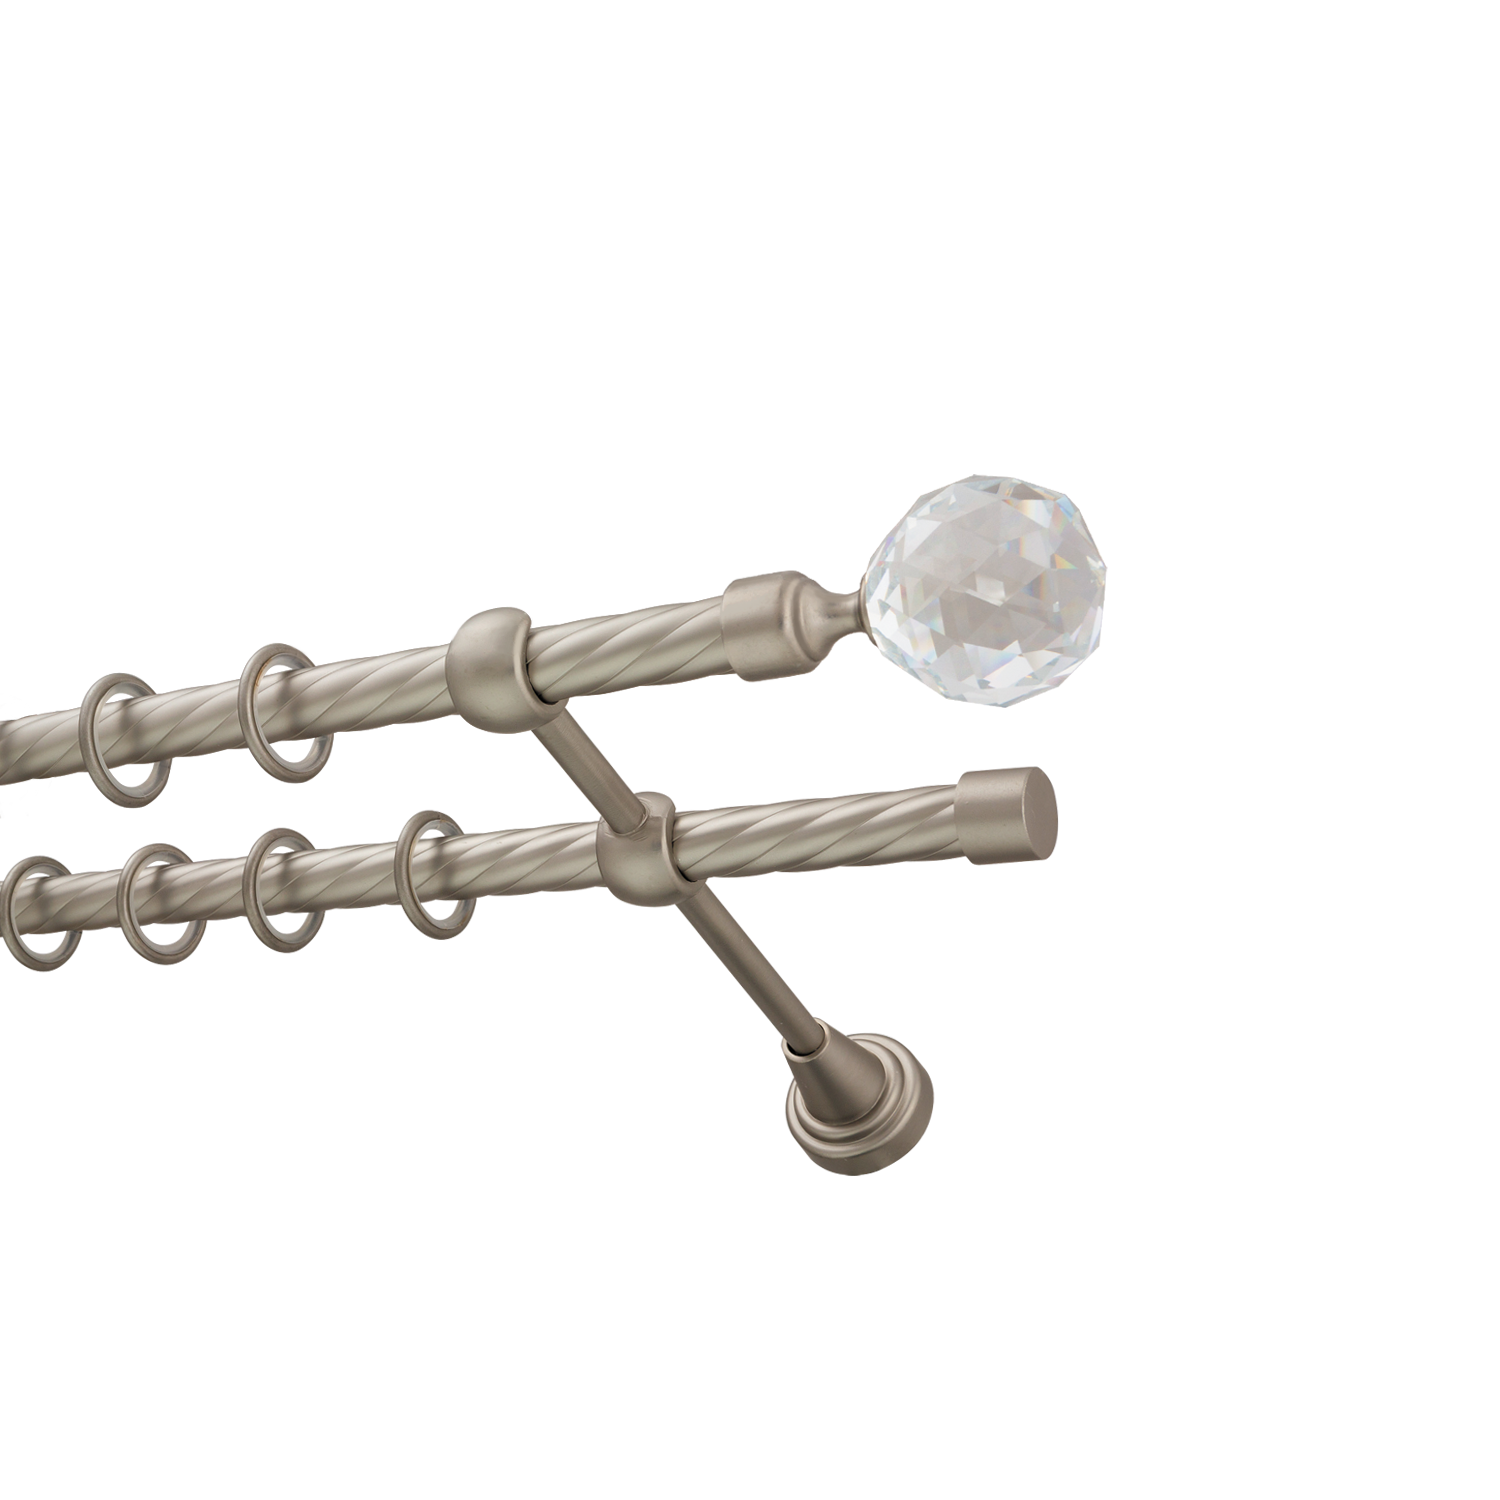 Металлический карниз для штор Карат, двухрядный 16/16 мм, сталь, витая штанга, длина 160 см - фото Wikidecor.ru